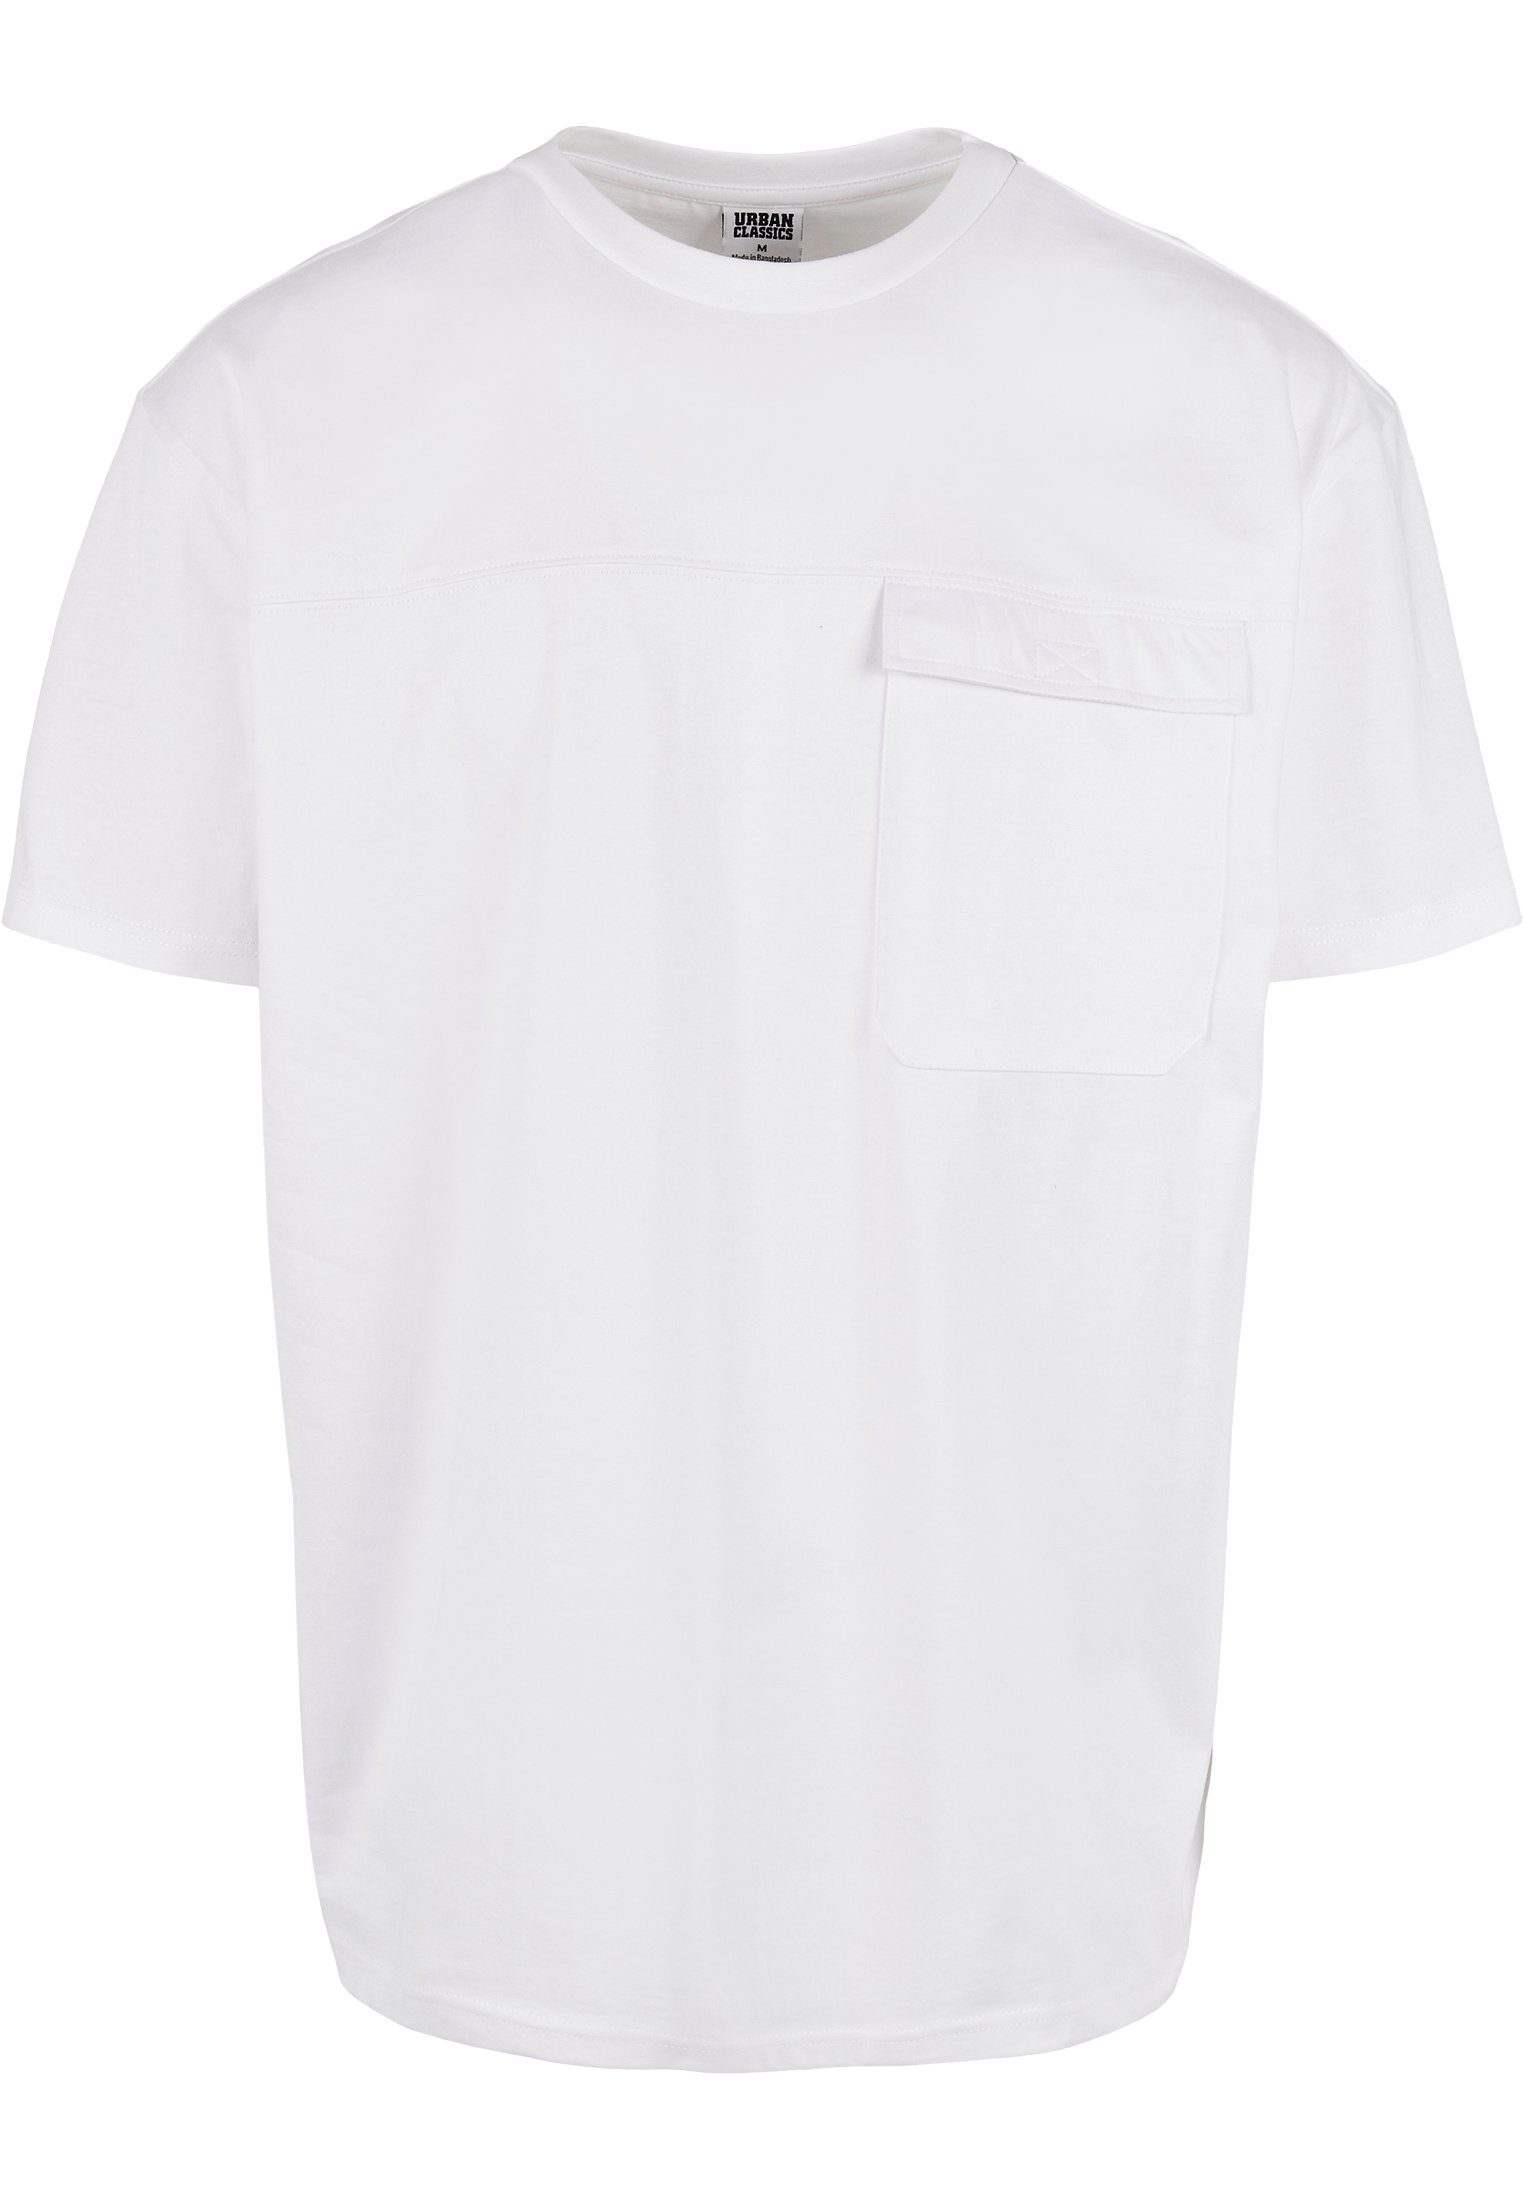 URBAN CLASSICS Print-Shirt TB4128 Big Flap Tee Black Oversized Pocket